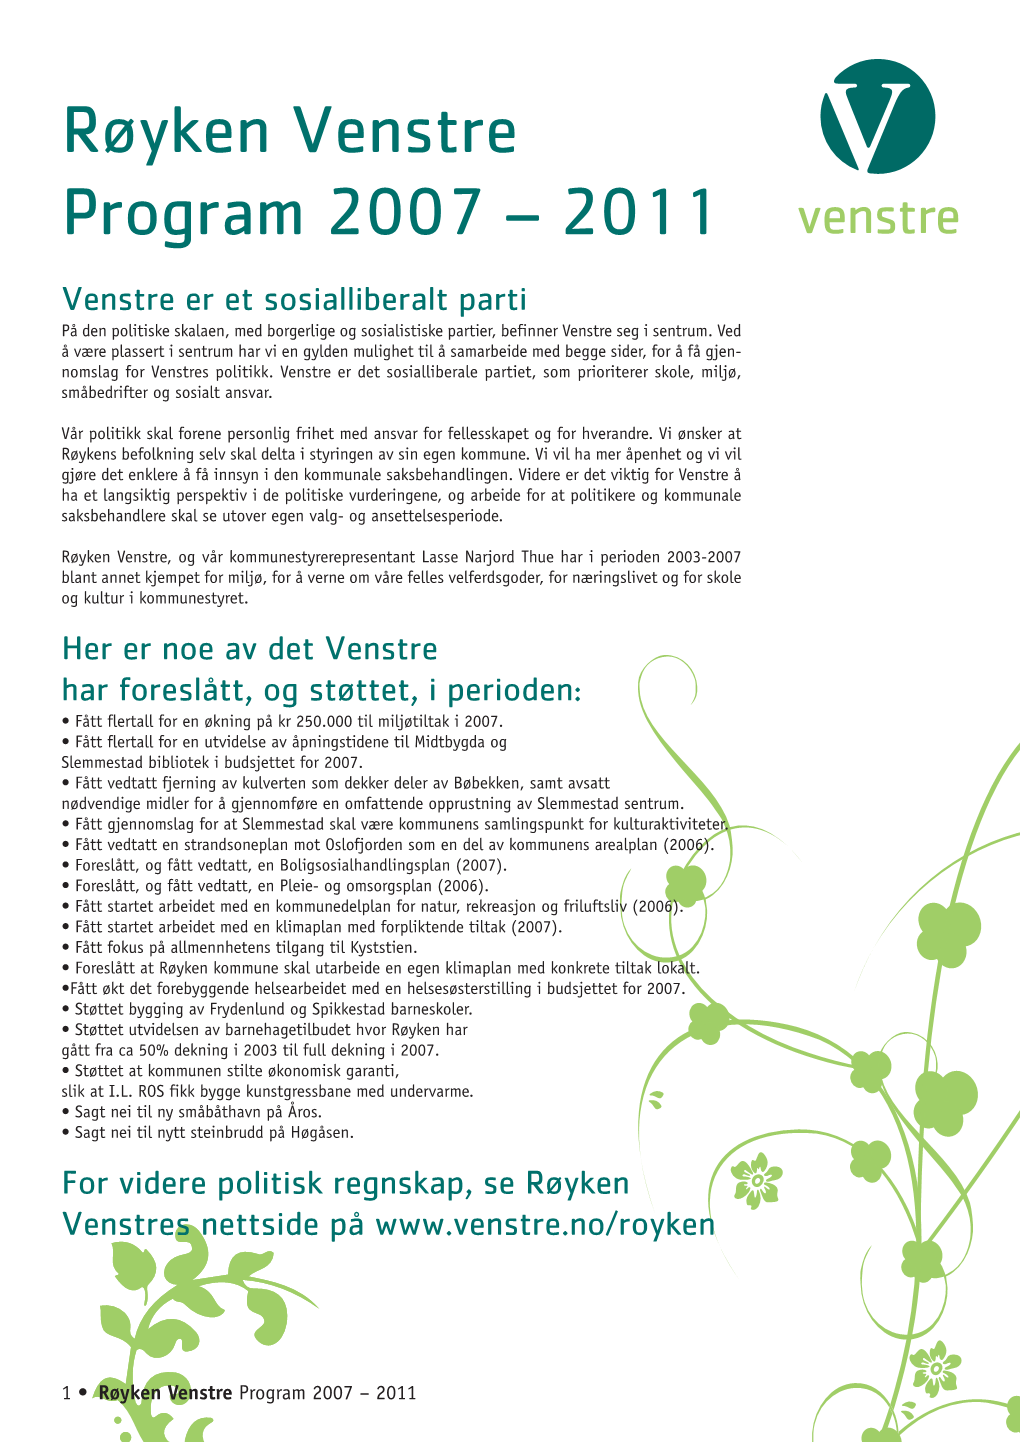 Røyken Venstre Program 2007 – 2011